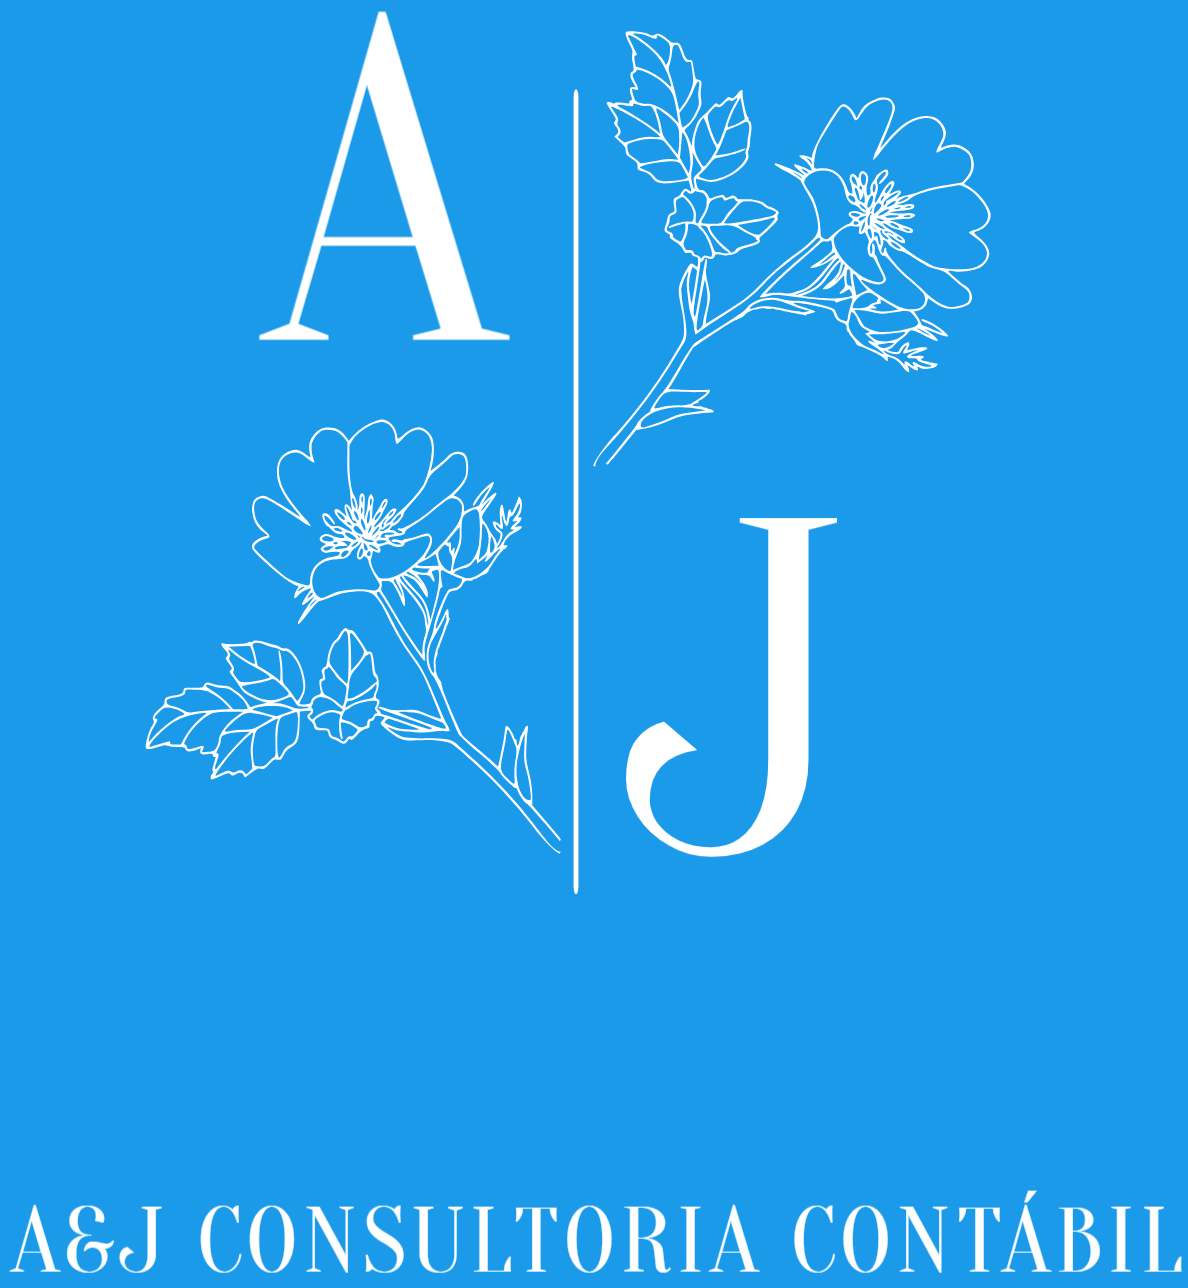 A&J Consultoria Contábil